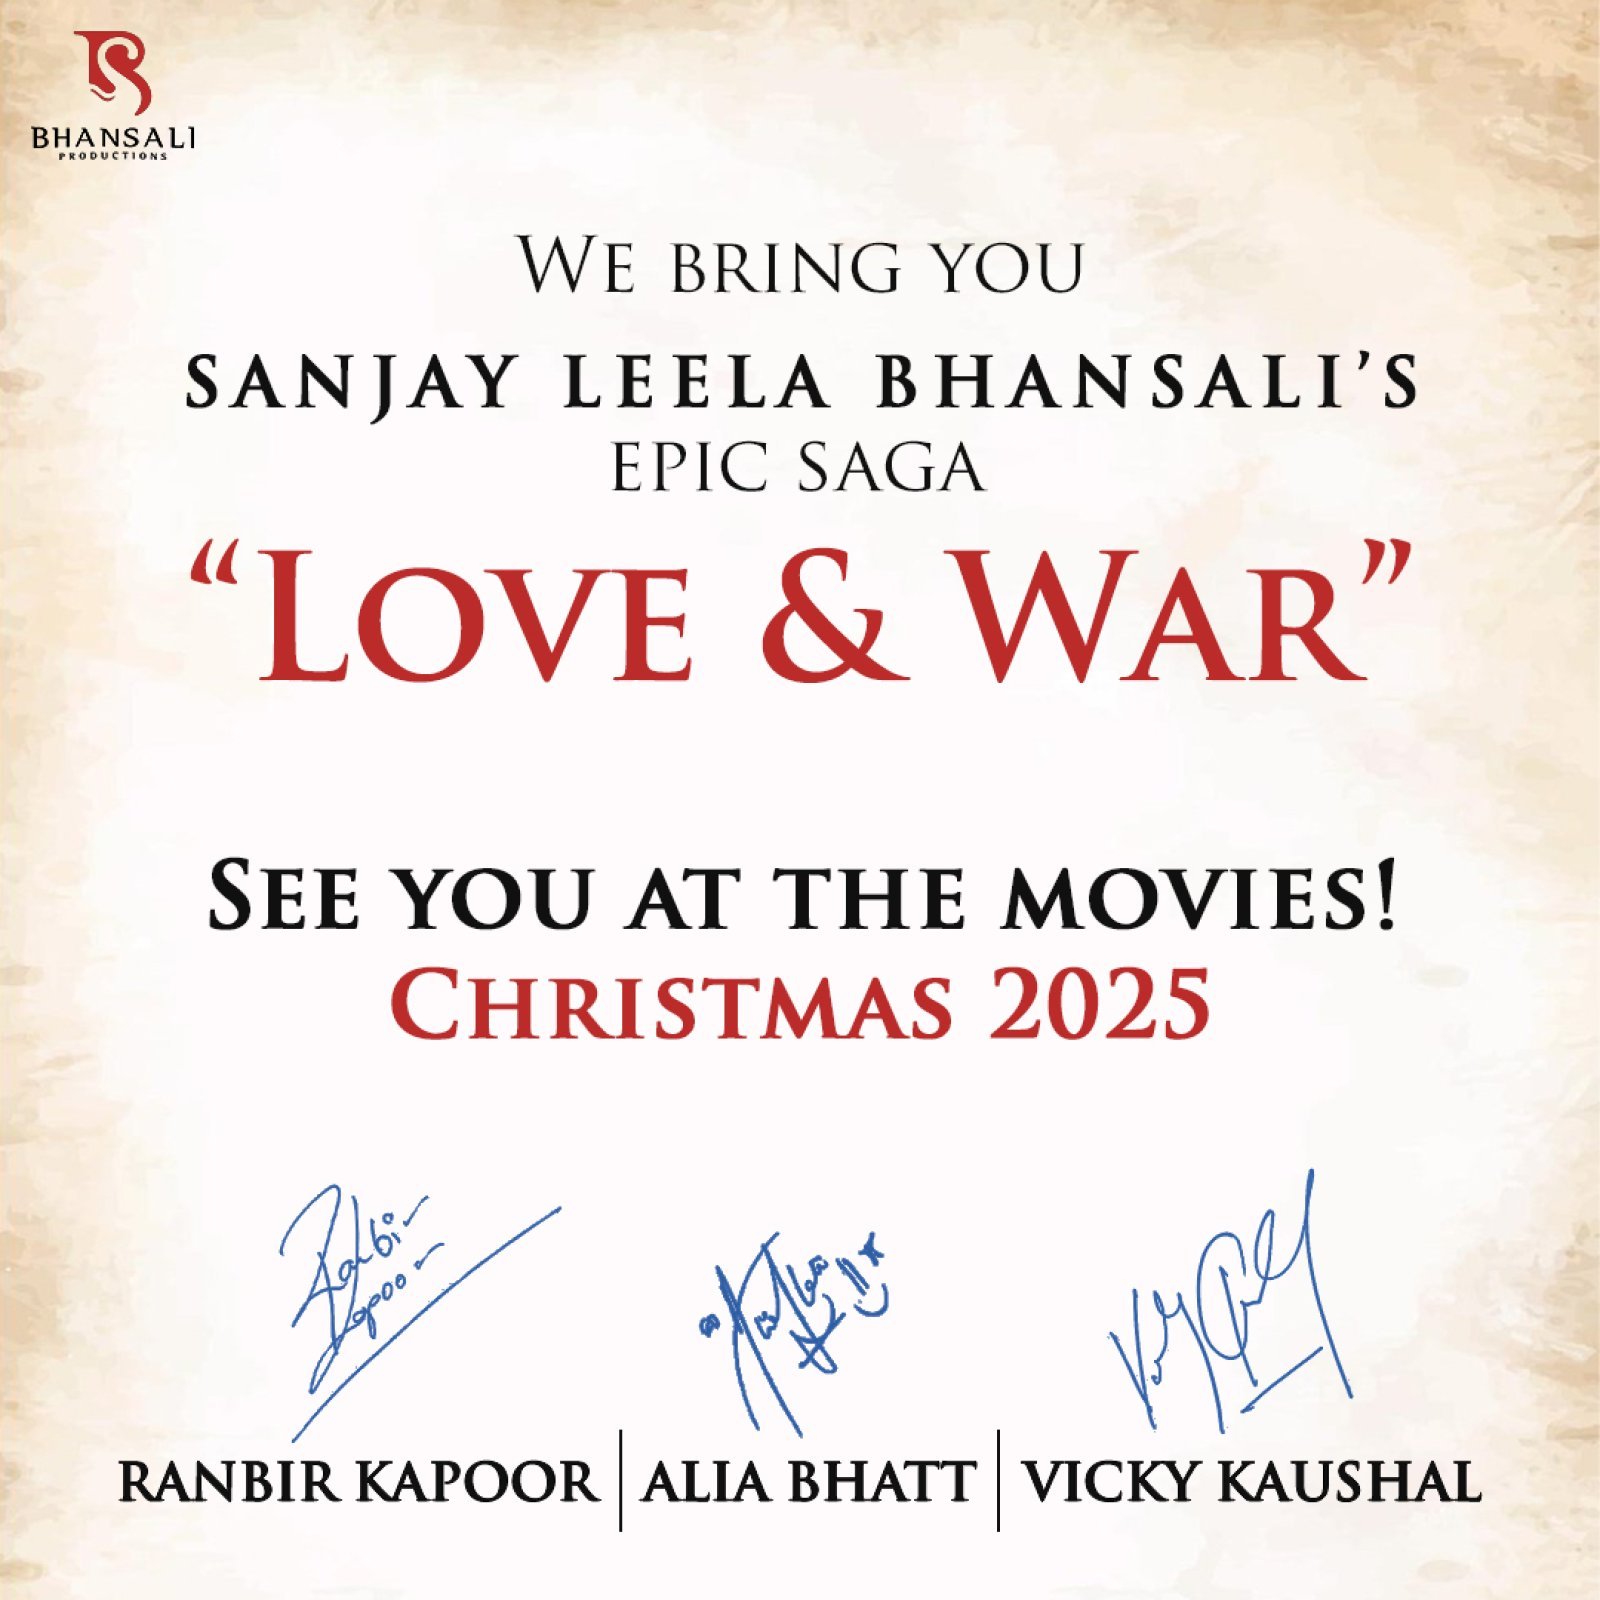 संजय लीला भंसाली की अगली फिल्म लव एंड वॉर' में रणबीर कपूर, आलिया भट्ट, और विक्की कौशल आएंगे नजर, क्रिसमस 2025 को होगी रिलीज